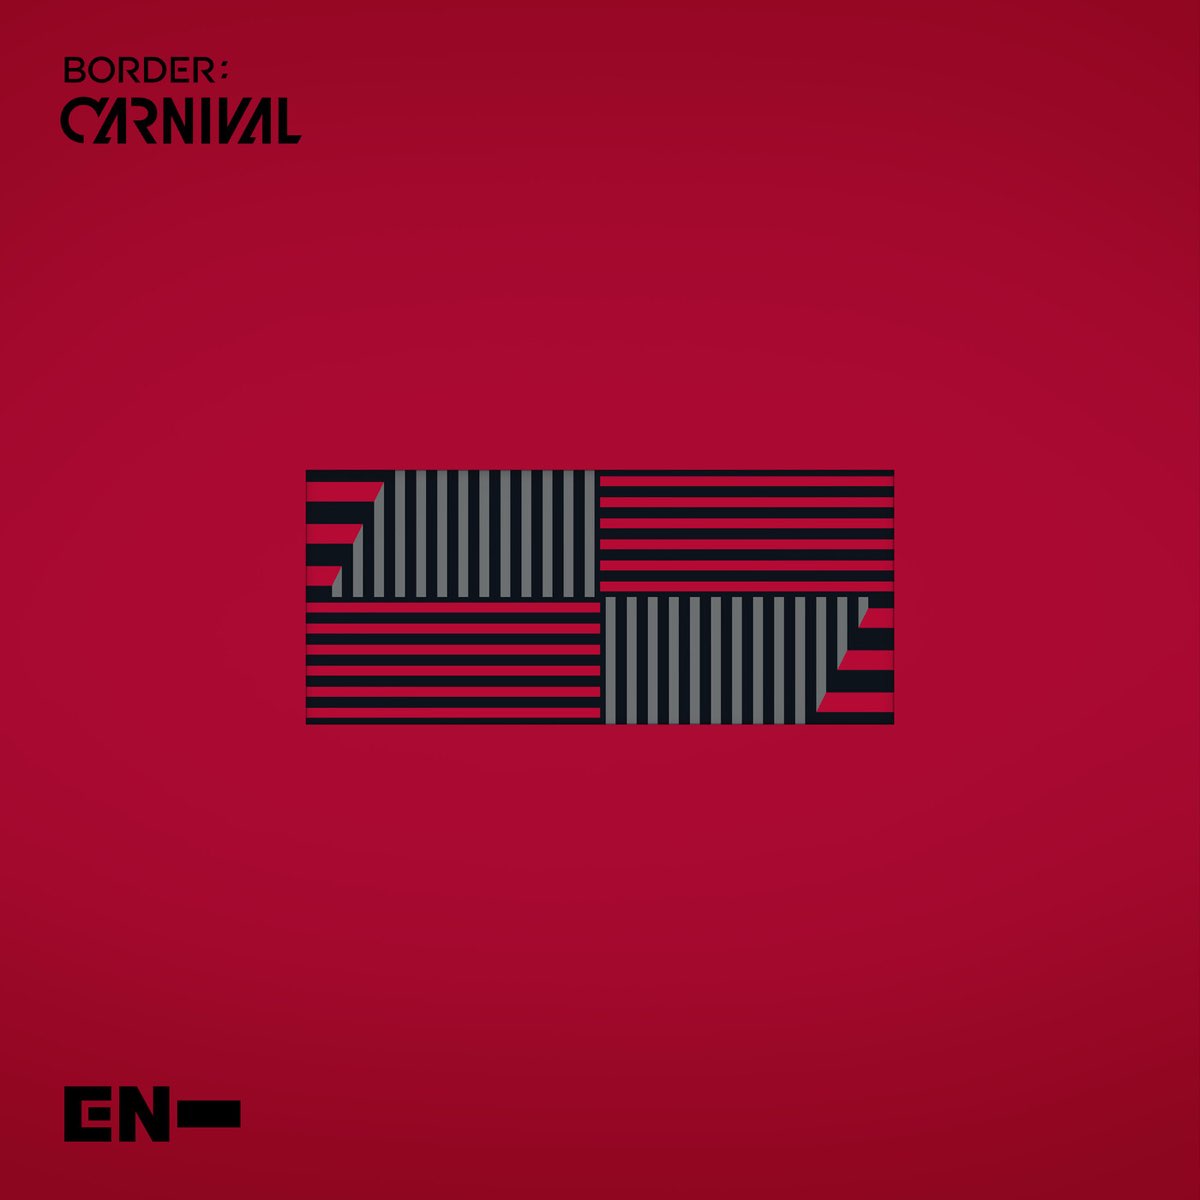 ‎BORDER : CARNIVAL - EP - Album by ENHYPEN - Apple Music